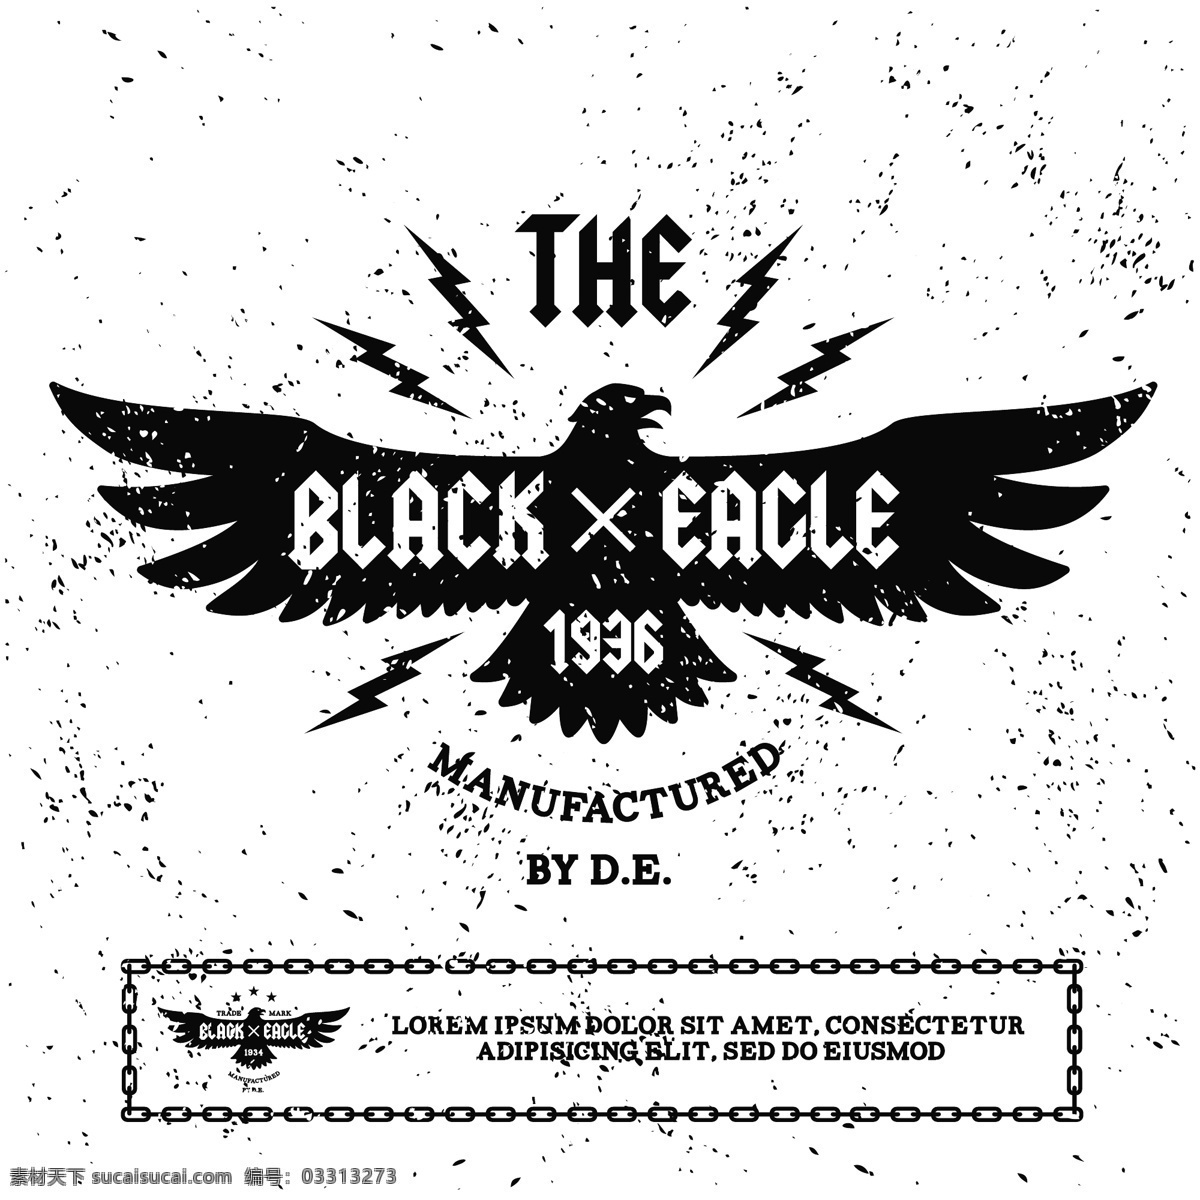 暗黑 风潮 流 装饰 图案 嘻哈 涂鸦 创意 英文艺术字 暗黑风 复古 标志设计 骷髅头 音乐 潮流文化 服装印花 logo